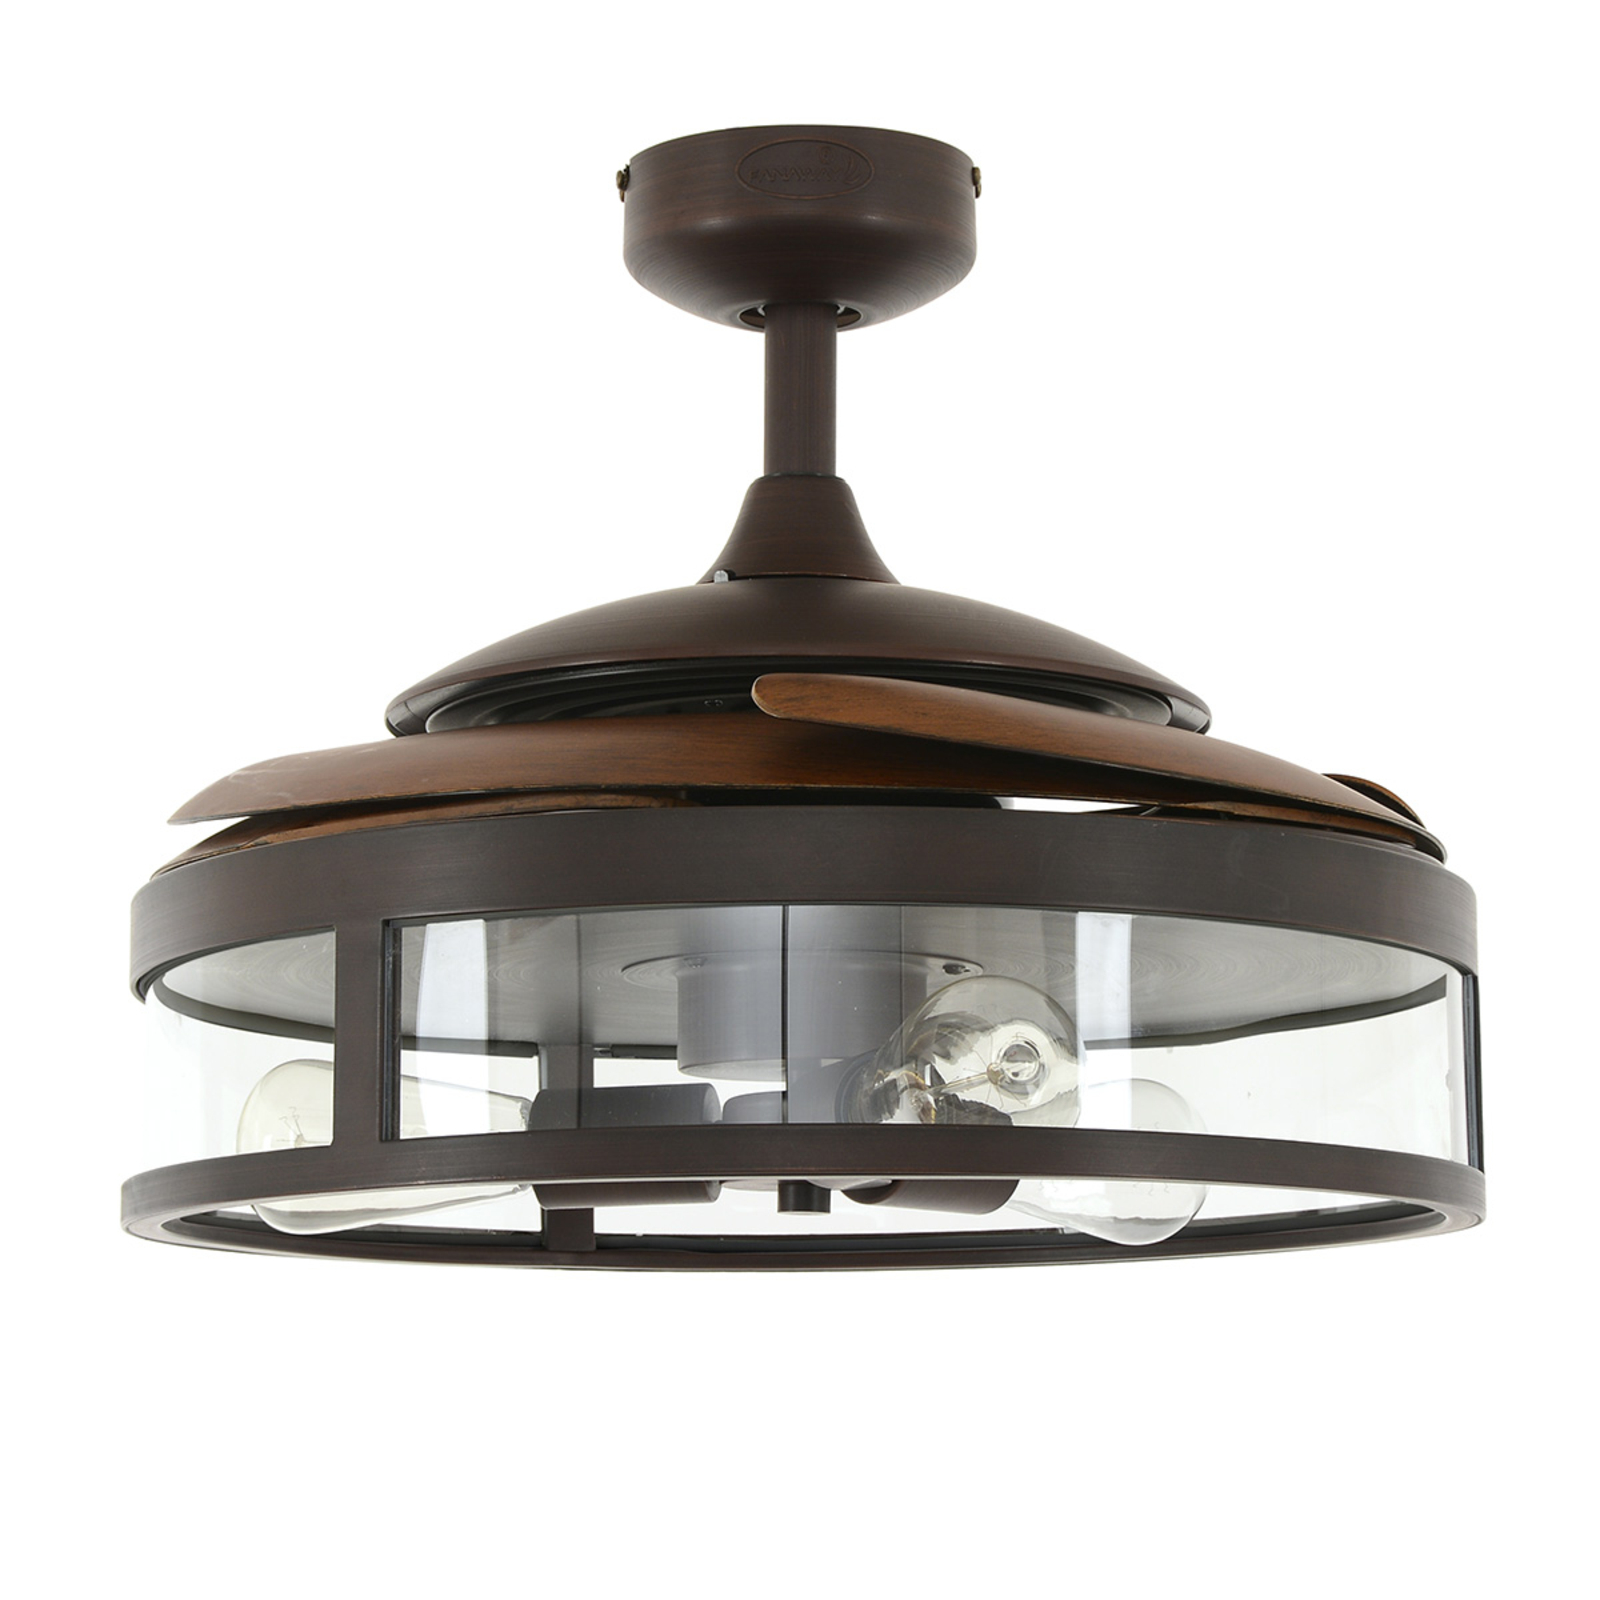 Afstotend Moedig aan Snor New Fanaway Classic - plafondventilator met lamp | Lampen24.be